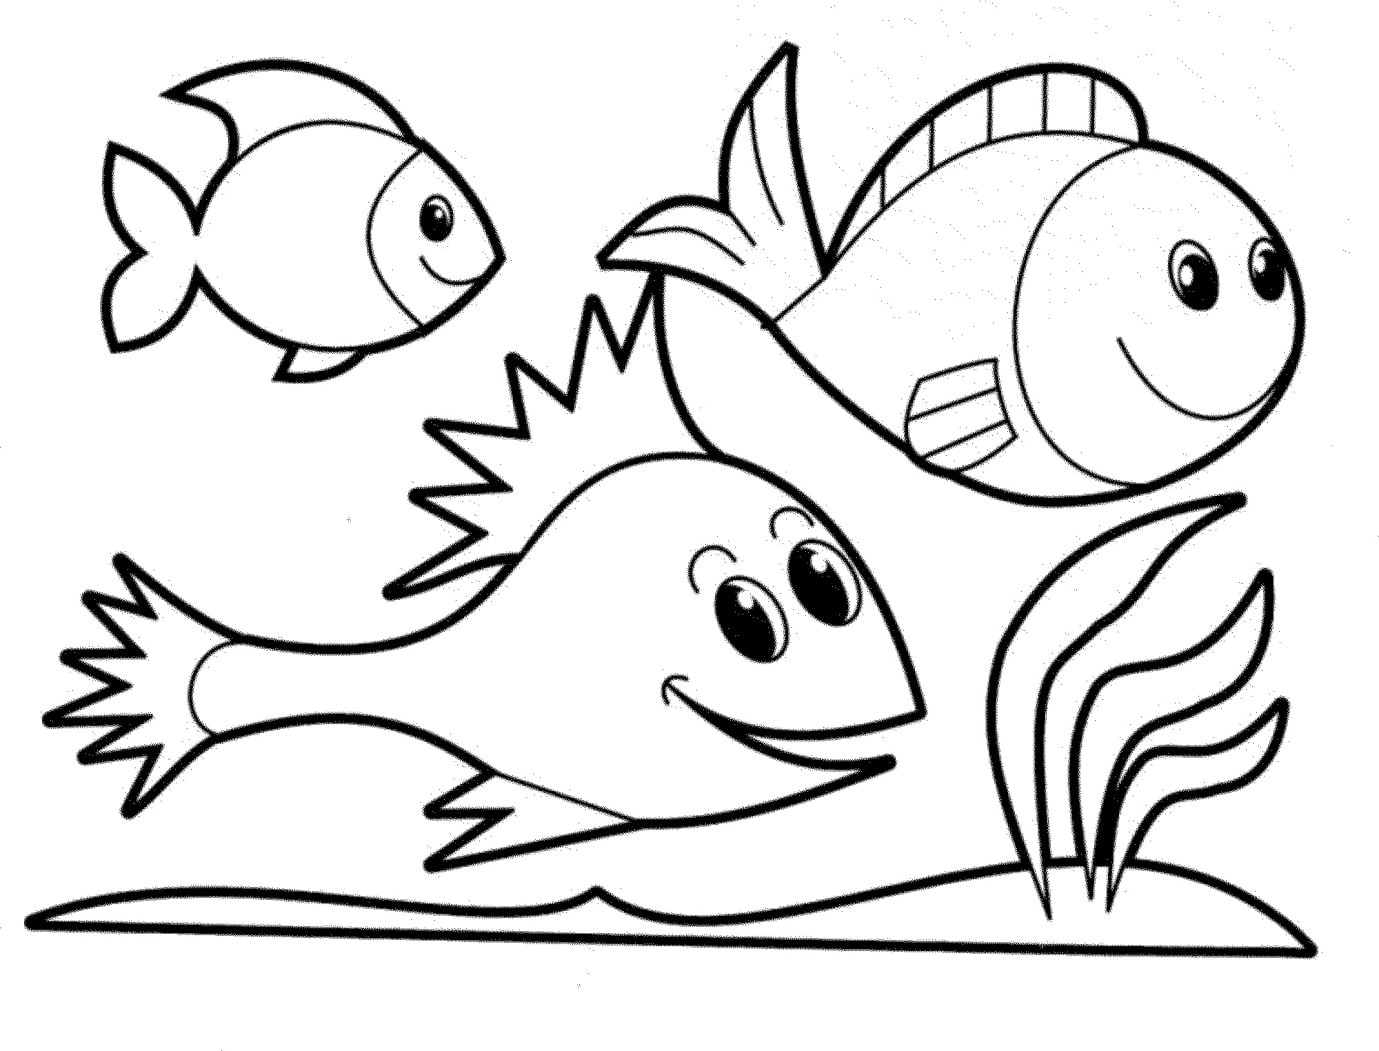 Tranh tô màu con vật sống dưới nước - 3 Chú cá đang bơi